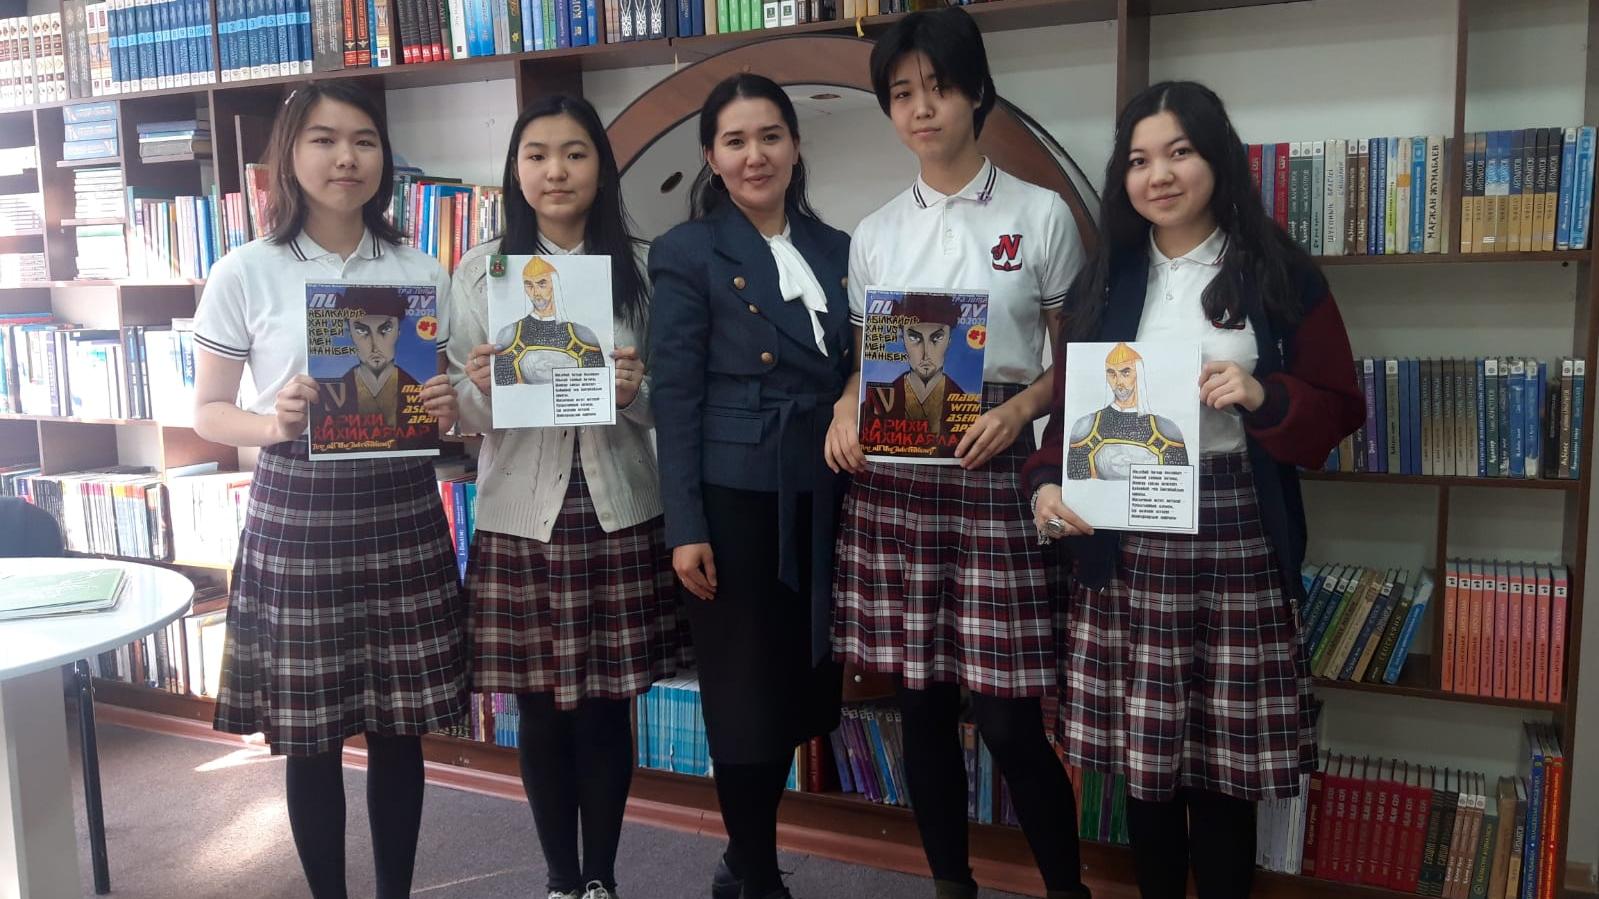 Через комиксы к знаниям: Как в карагандинской школе стали изучать историю Казахстана с помощью аниме